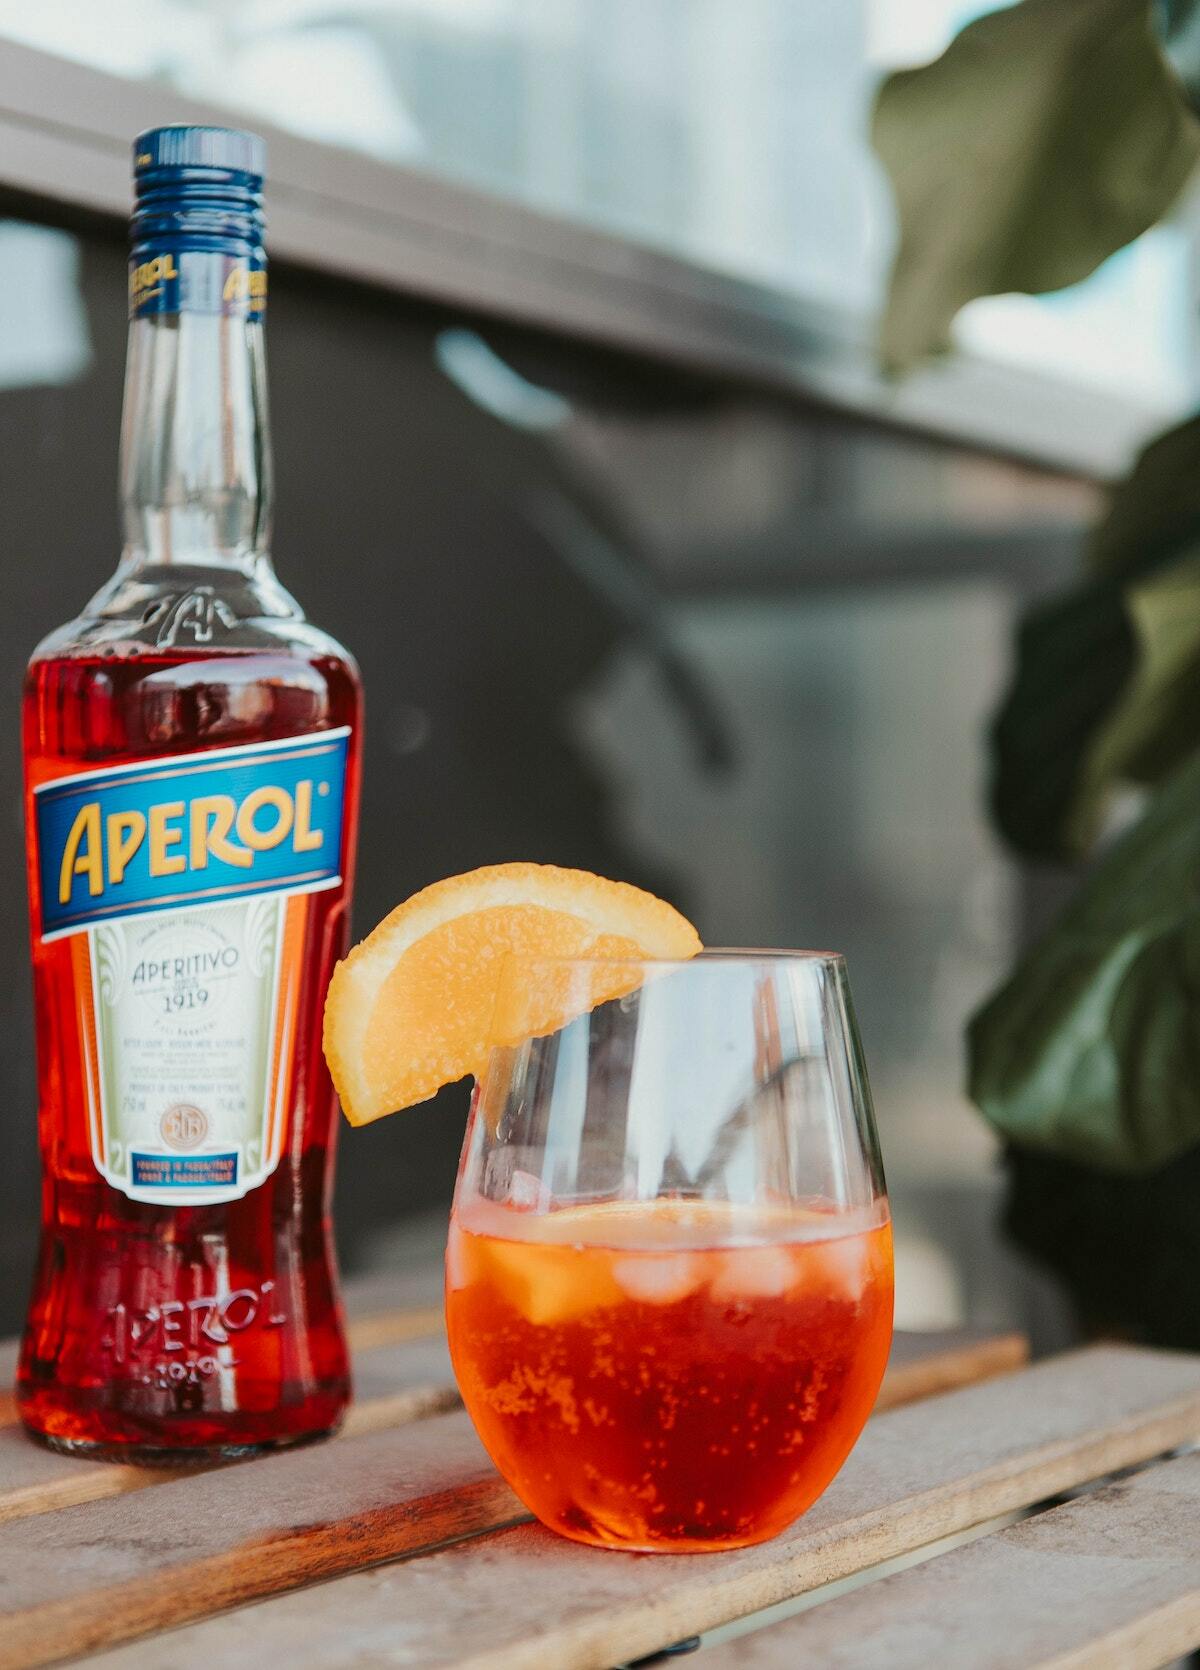 Spritz : La recette authentique de ce cocktail italien